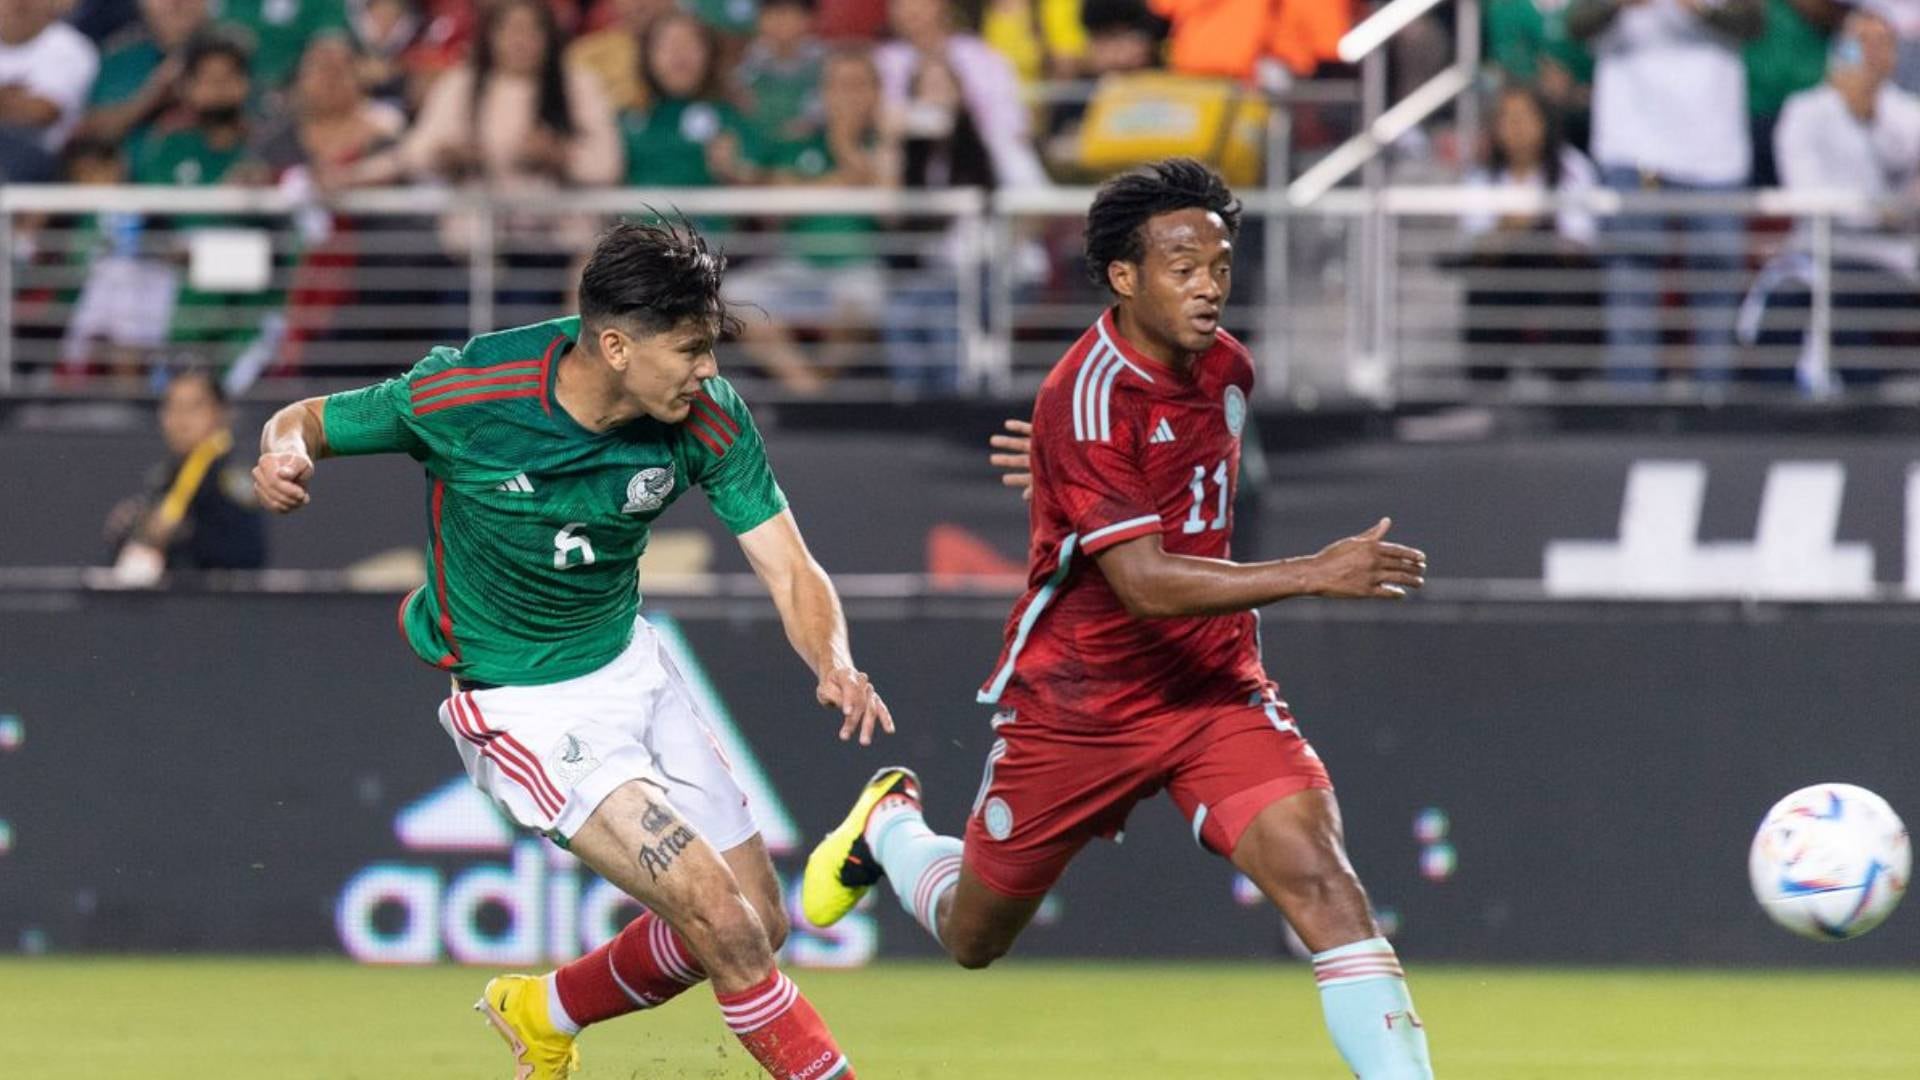 críticas al nivel de la selección Colombia en el primer tiempo del partido contra México abundaron